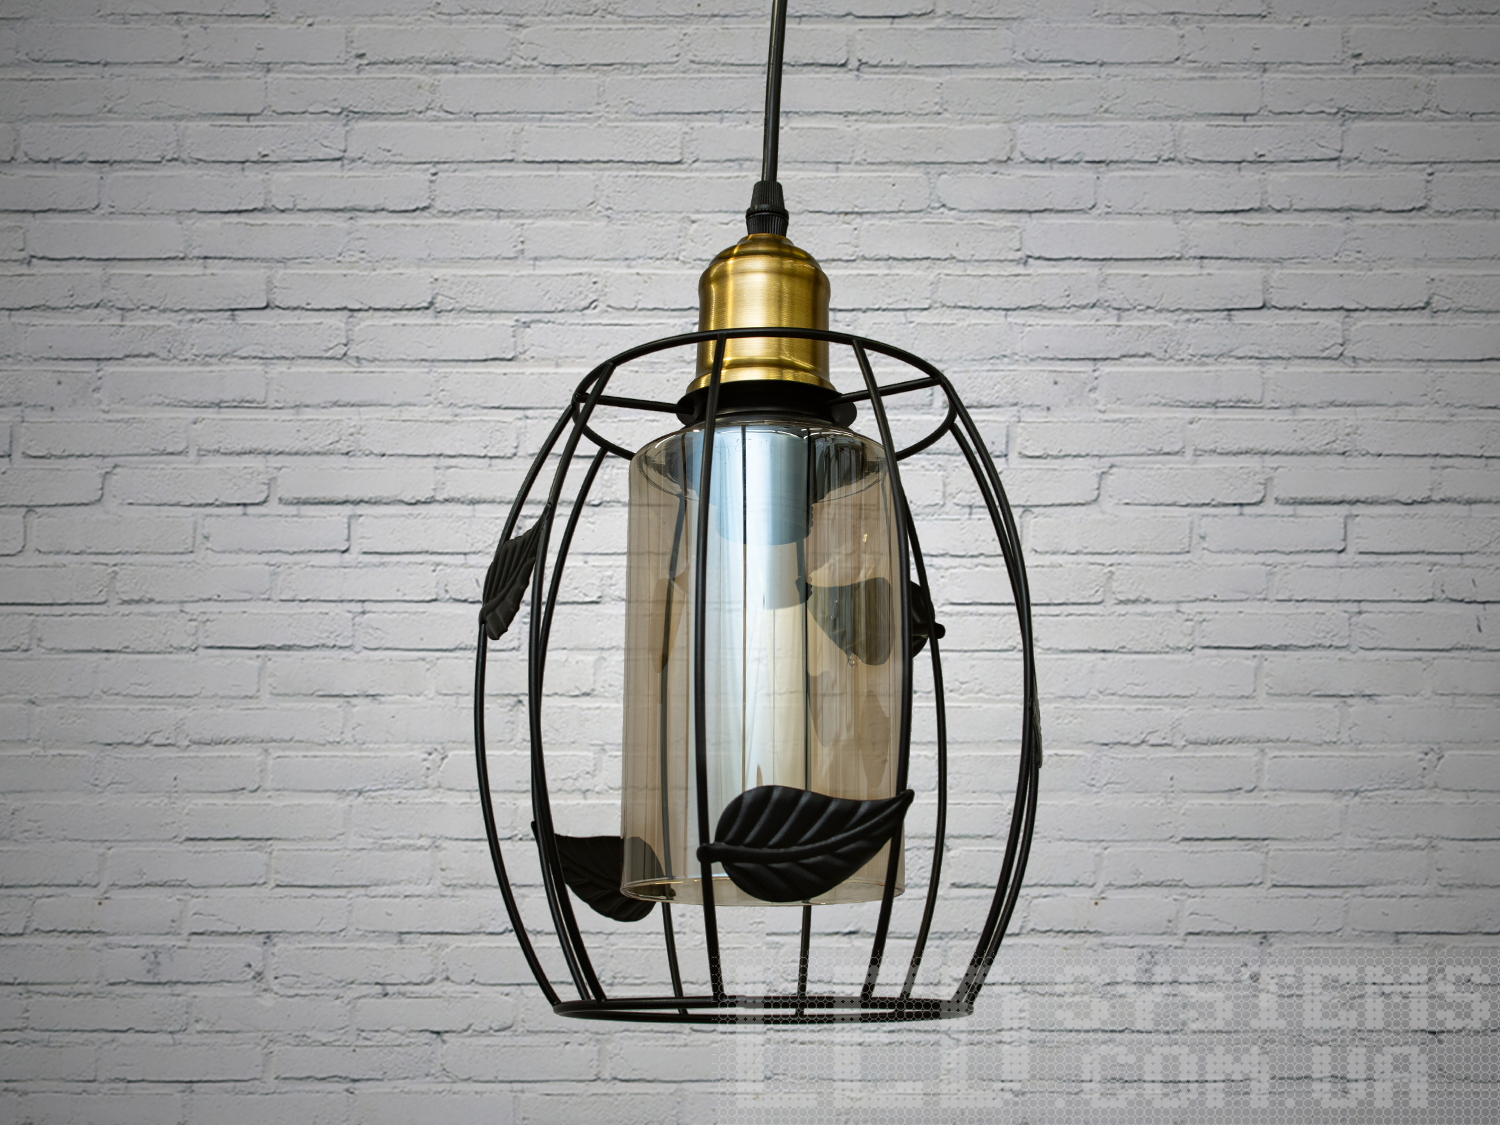 Світильник-підвіс в стилі лофт, який ідеально підходить під лампочку Едісона, об'єднує у собі вишуканість  та  індустріальний шарм. Його дизайн підкреслює автентичність та теплоту лампочки Едісона, створюючи унікальний елемент декору та освітлення.
Характеристики світильника:
Лампа Едісона як центральний елемент: Спеціально розроблений дизайн, що виділяє та підкреслює лампу Едісона як центральний елемент світильника. Застосування лампи Едісона з декоративними нитками або нестандартною формою додає виробу вишуканості та тепла. Лампочка Едісона надає приємне приглушене світло, створюючи тепло та затишну атмосферу в місці розташування світильника.
Матеріали з індустріальним виглядом: Використовуються металеві або чорні матеріали, що надають індустріальний шарм та вишуканість. Мінімалізм цього світильника підкреслить вашу індивідуальність і відчуття стилю. Металеві елементи можуть мати сліди старіння, підряпини чи інші недоліки, що є характерними для стилю лофт та надають світильнику виразний вигляд.
Лофтовий дизайн: З підвісом у вигляді ланцюга чи троса, грубими металевими деталями та відкритим дизайном, що додає стиль лофту. Стиль «Лофт» зараз дуже популярний, його люблять як творчі особистості, так і вельми практичні люди, які віддають перевагу комфорту і простоті в інтер'єрі. Світильники в стилі «лофт» ідеально впишуться в сучасні будинки, квартири, кафе, арт-простори, коворкінги, квеструми.
Підвісний світильник ідеально поєднується з іншими індустріальними деталями, такими як відкриті труби, цегла або металеві стільниці.
Можливість регулювання висоти: Дозволяє легко адаптувати світильник до різних просторових умов.
Сфери використання:
Ресторани та кафе: Створює тепло та затишне освітлення, ідеально підходить для створення атмосфери в зонах обіду або бару.
Житлові приміщення: Виглядає чудово у вітальнях, кухнях чи спальнях, додаючи індустріальний акцент до інтер'єру.
Магазини та виставкові зони: Створює стильний вигляд для приміщень, де важливий дизайн та видиму привабливість. Вигідно підкреслює стильні товари або предмети мистецтва, надаючи їм індивідуальний вигляд.
Фото- та відеостудії: Забезпечує освітлення з характером для створення унікальних фото чи відеоматеріалів.
Цей світильник-підвіс у стилі лофт з лампочкою Едісона створює особливу атмосферу, де тепло та стиль індустріального дизайну взаємодіють, надаючи приміщенню унікальний і вишуканий вигляд.
Лампа в комплект не входить.